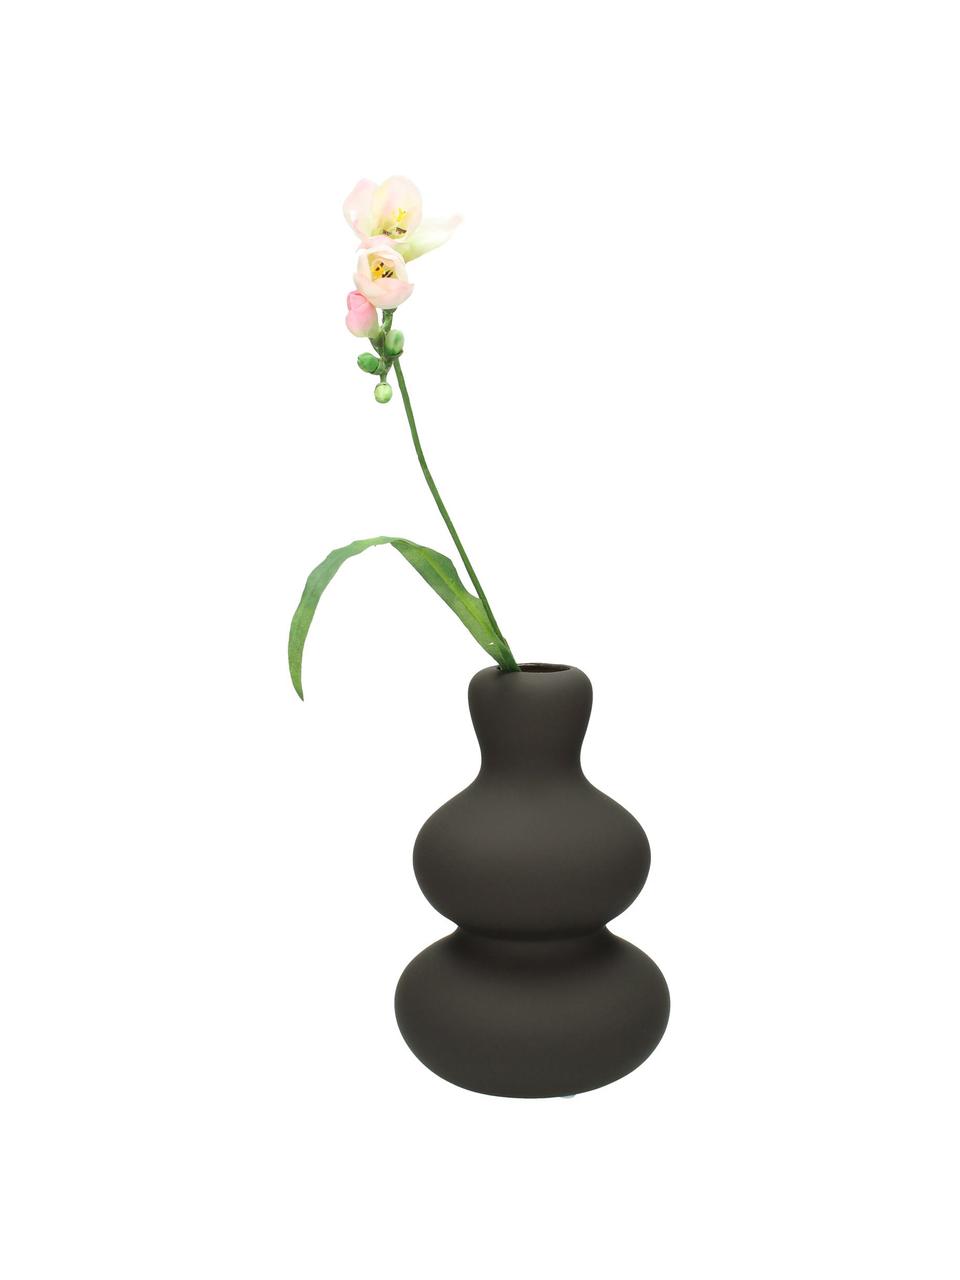 Kameninová váza Fine, Kamenina, Hnědá, Ø 14 cm, V 20 cm